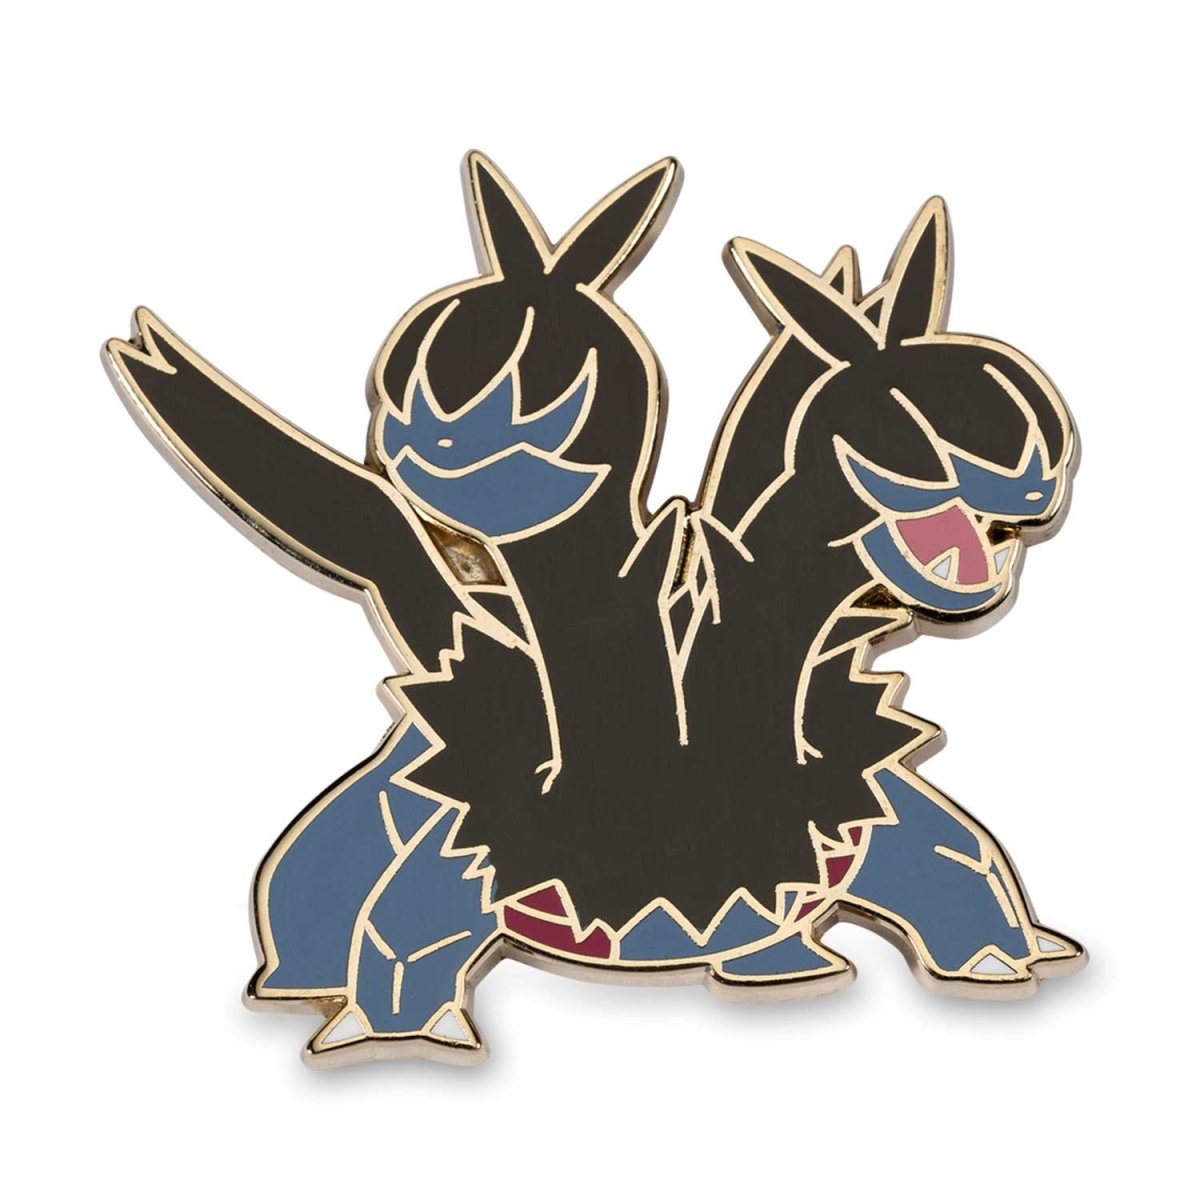 Deino, Zweilous & Hydreigon Pokémon Pins (3-Pack)